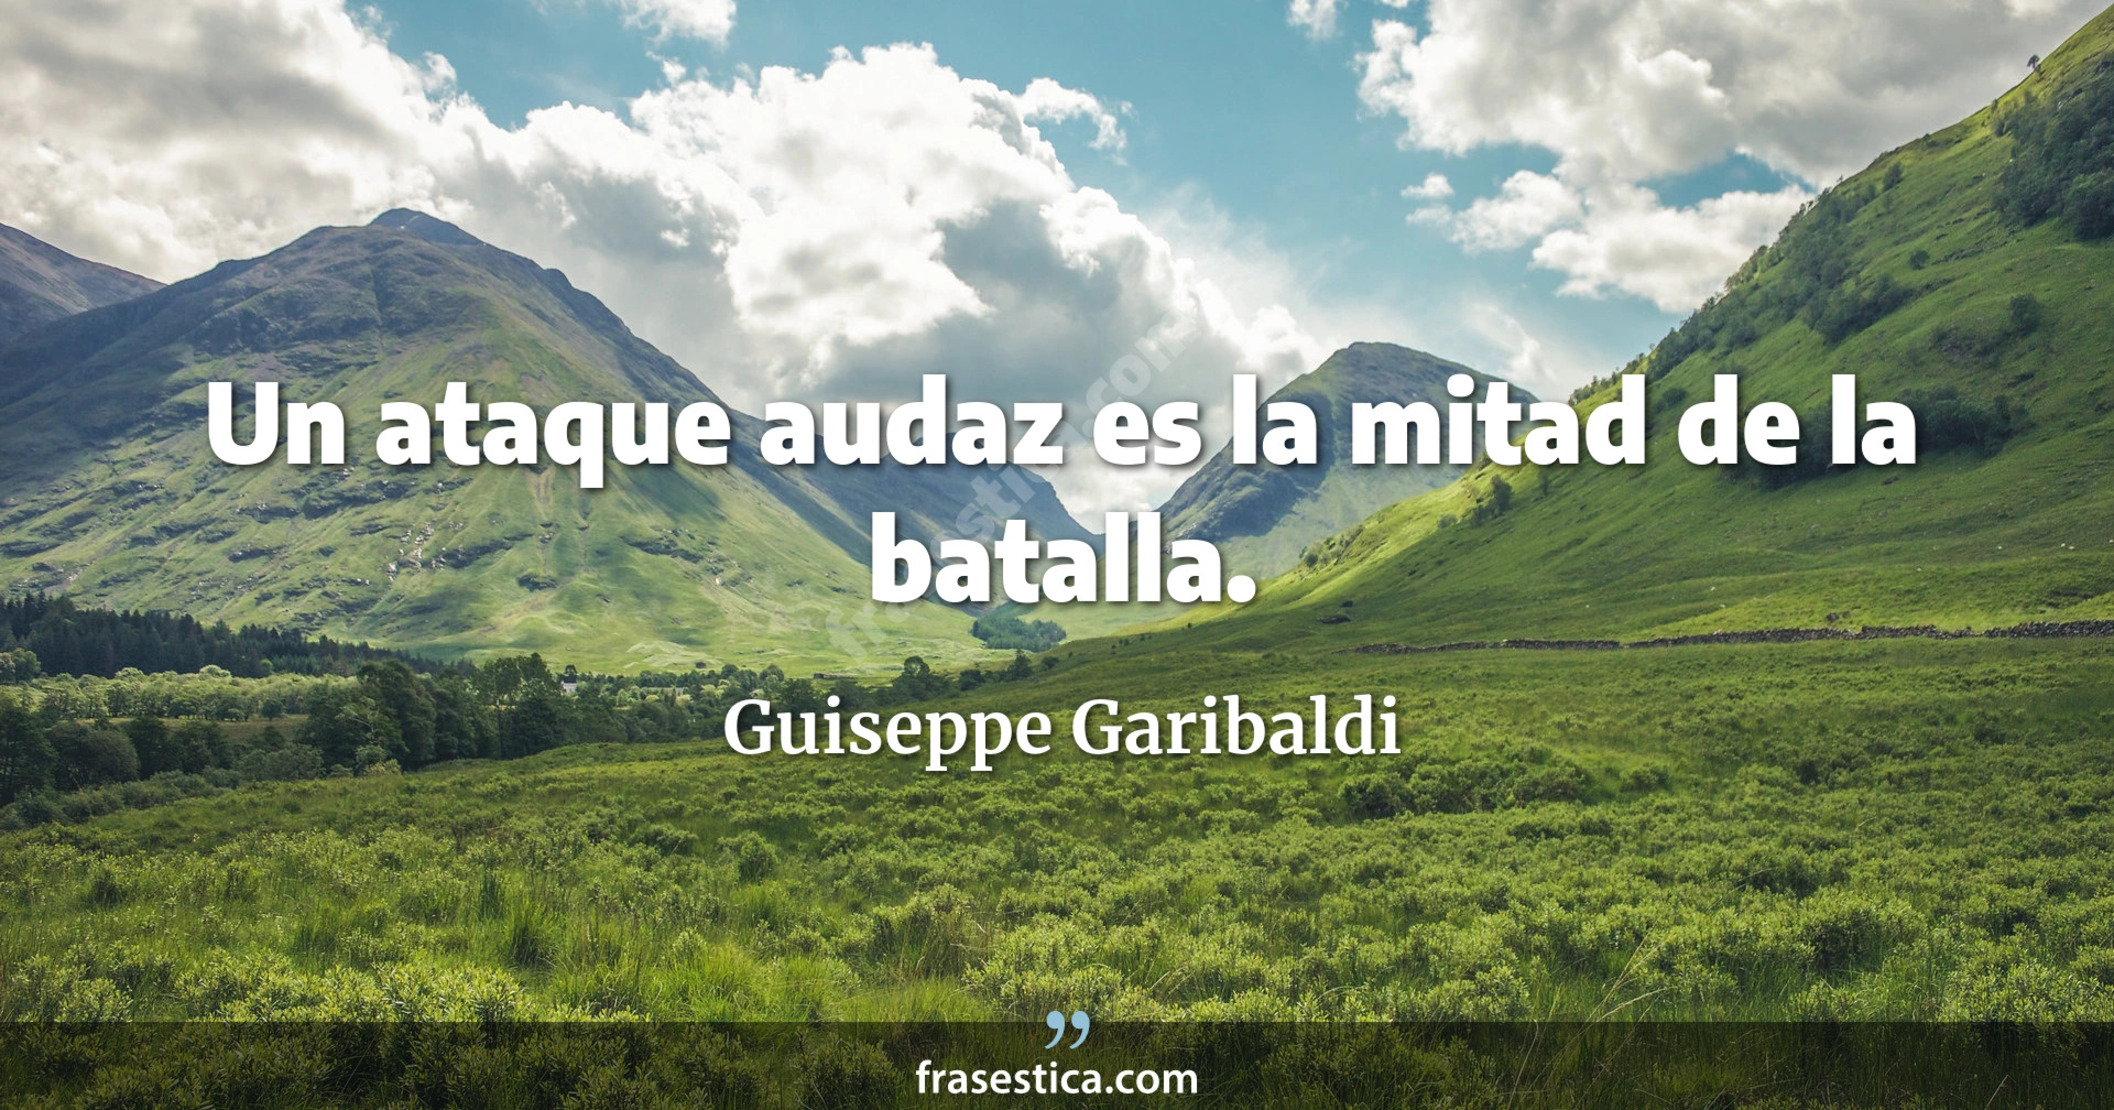 Un ataque audaz es la mitad de la batalla. - Guiseppe Garibaldi